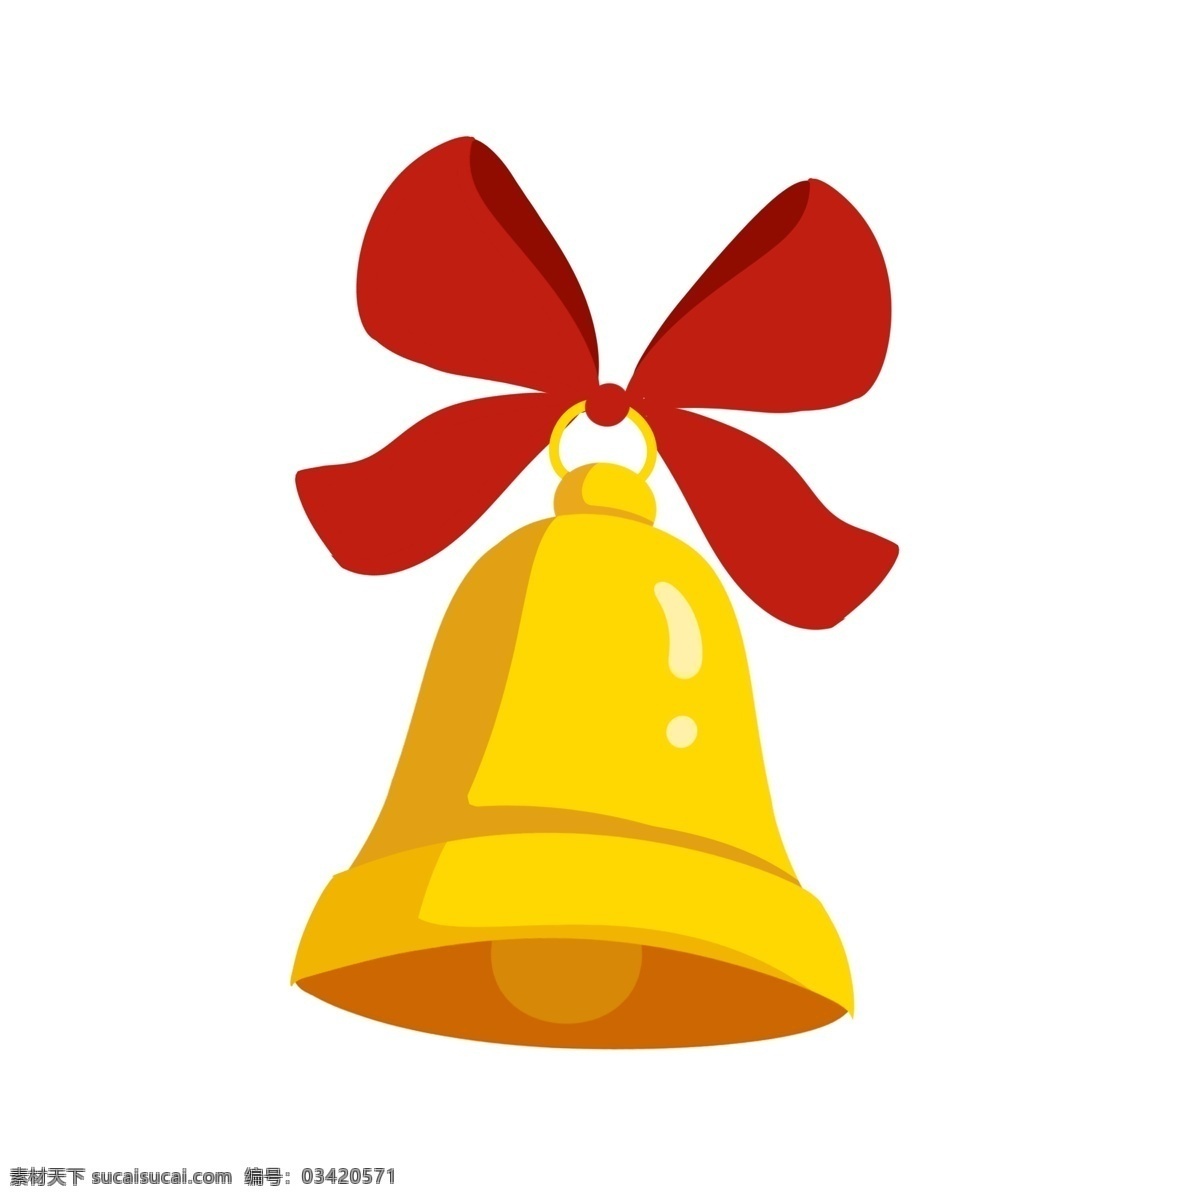 手绘 圣诞节 铃铛 插画 金色的铃铛 金灿灿的铃铛 红色的蝴蝶结 圣诞节铃铛 卡通插画